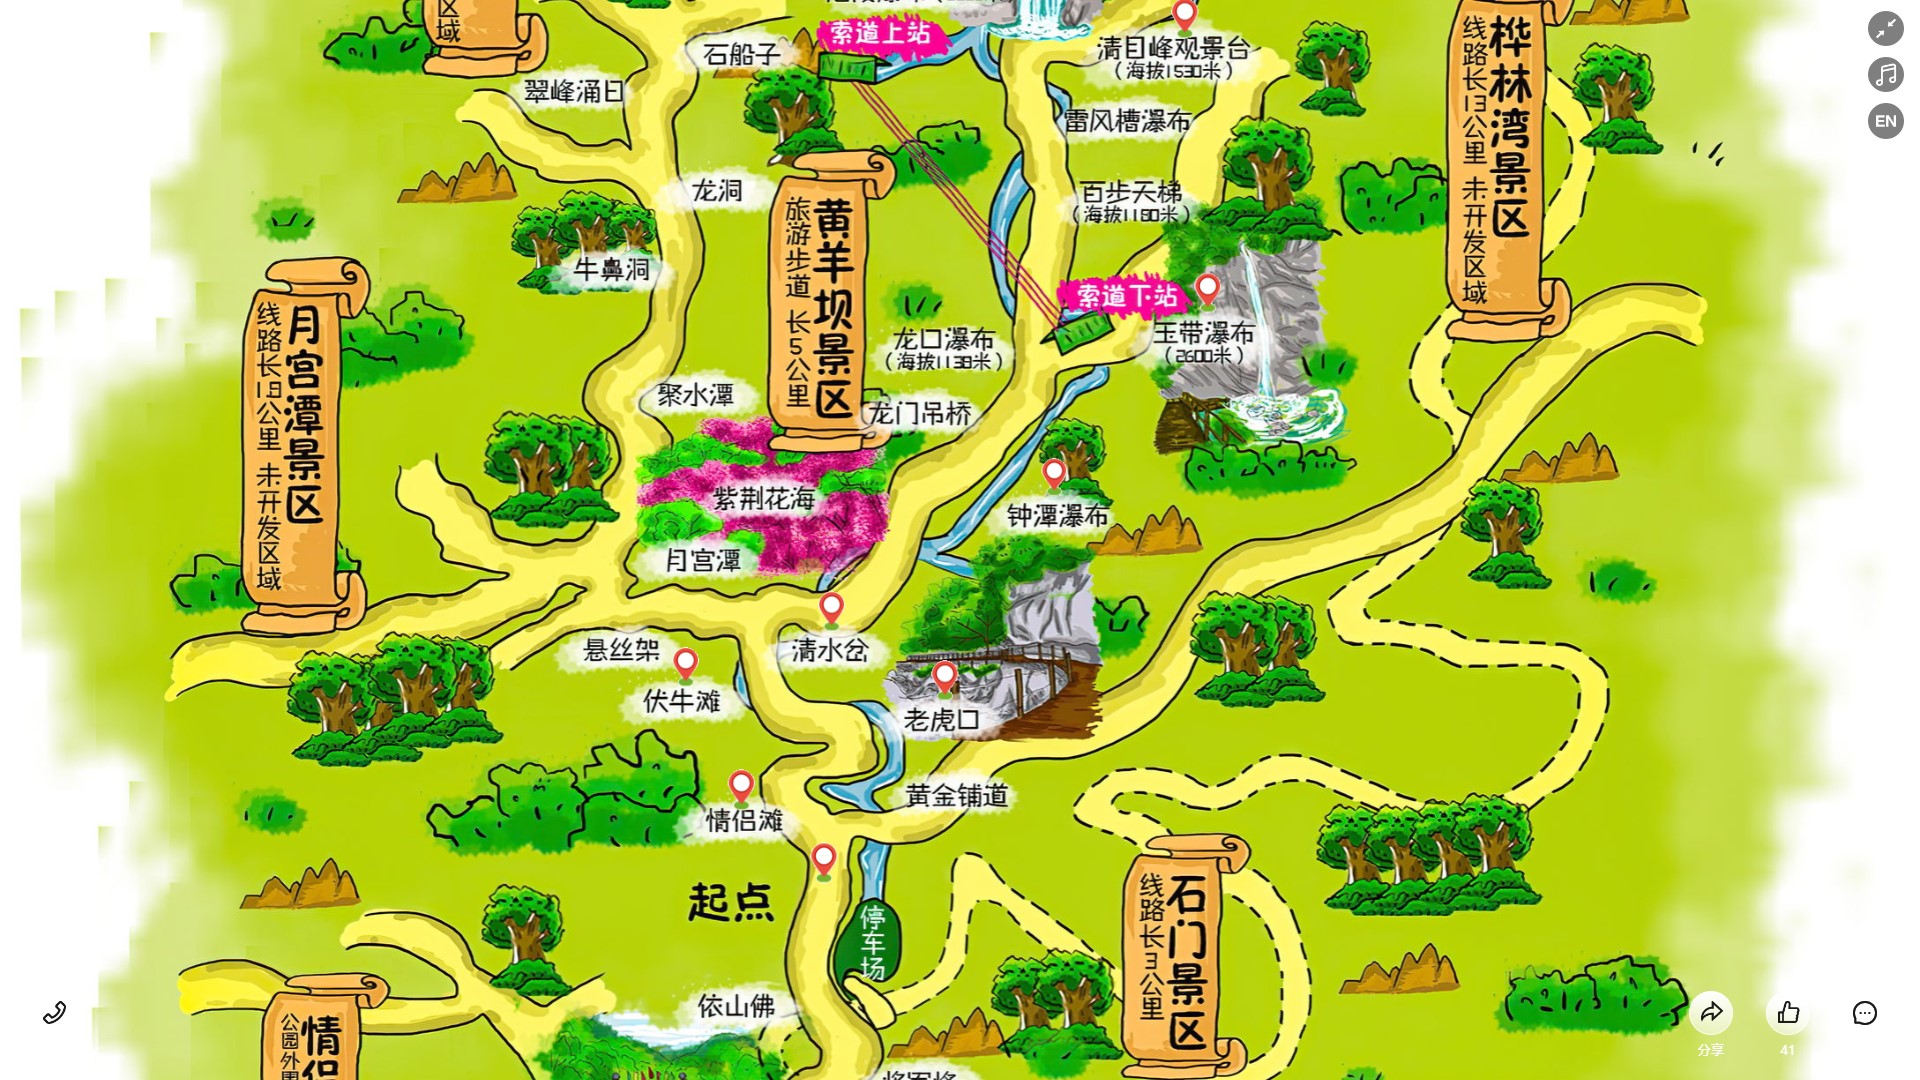 竹溪景区导览系统